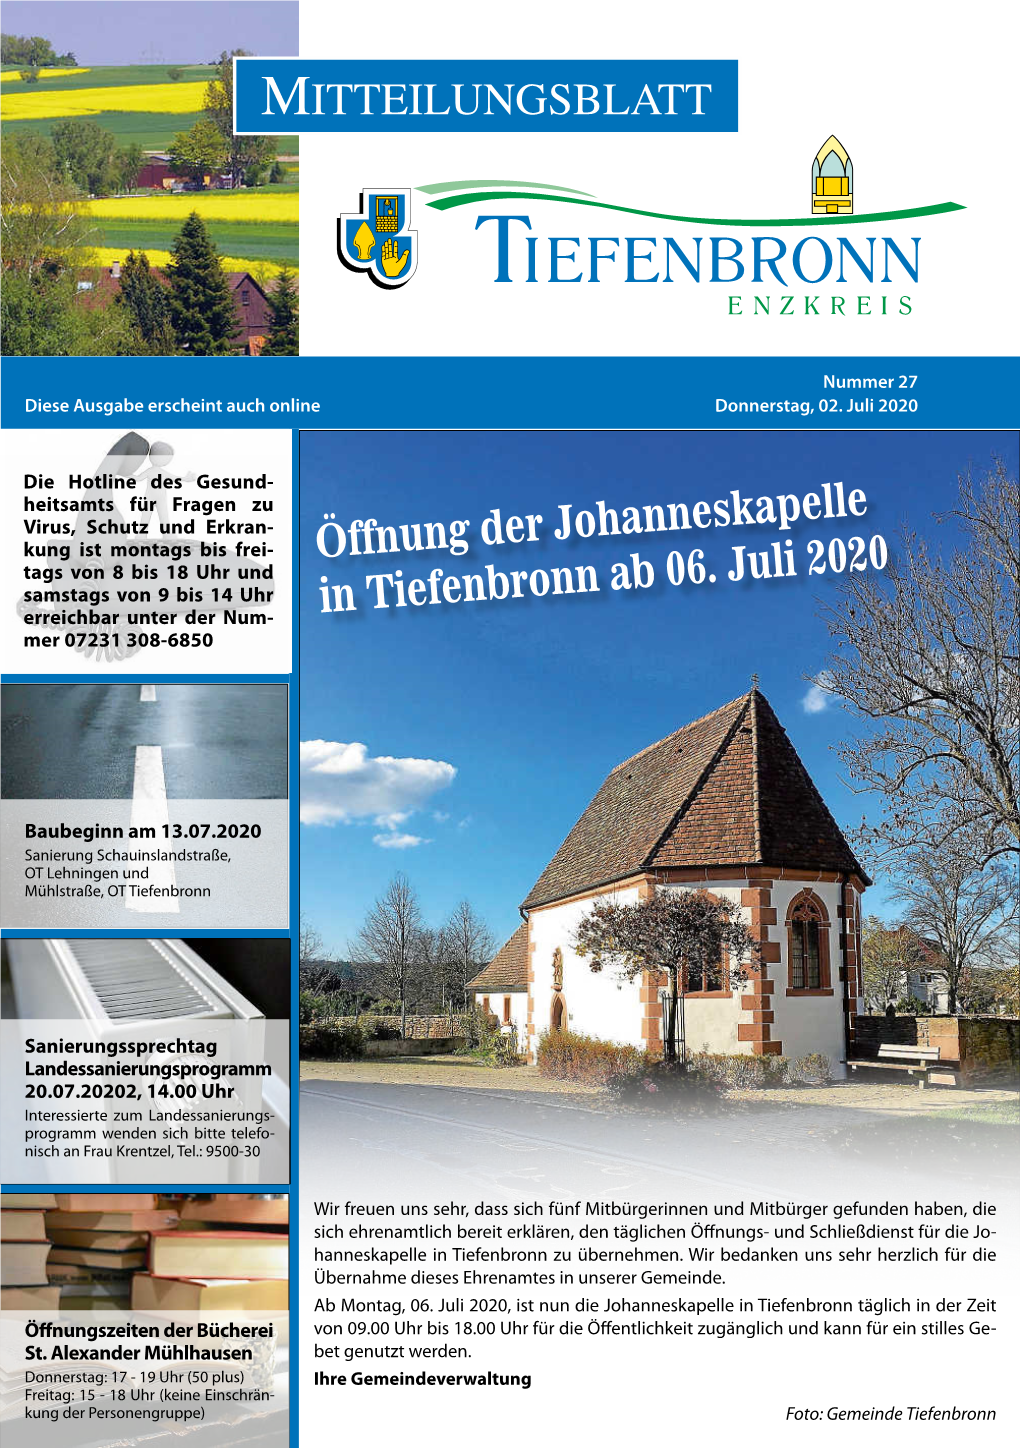 Öffnung Der Johanneskapelle in Tiefenbronn Ab 06. Juli 2020